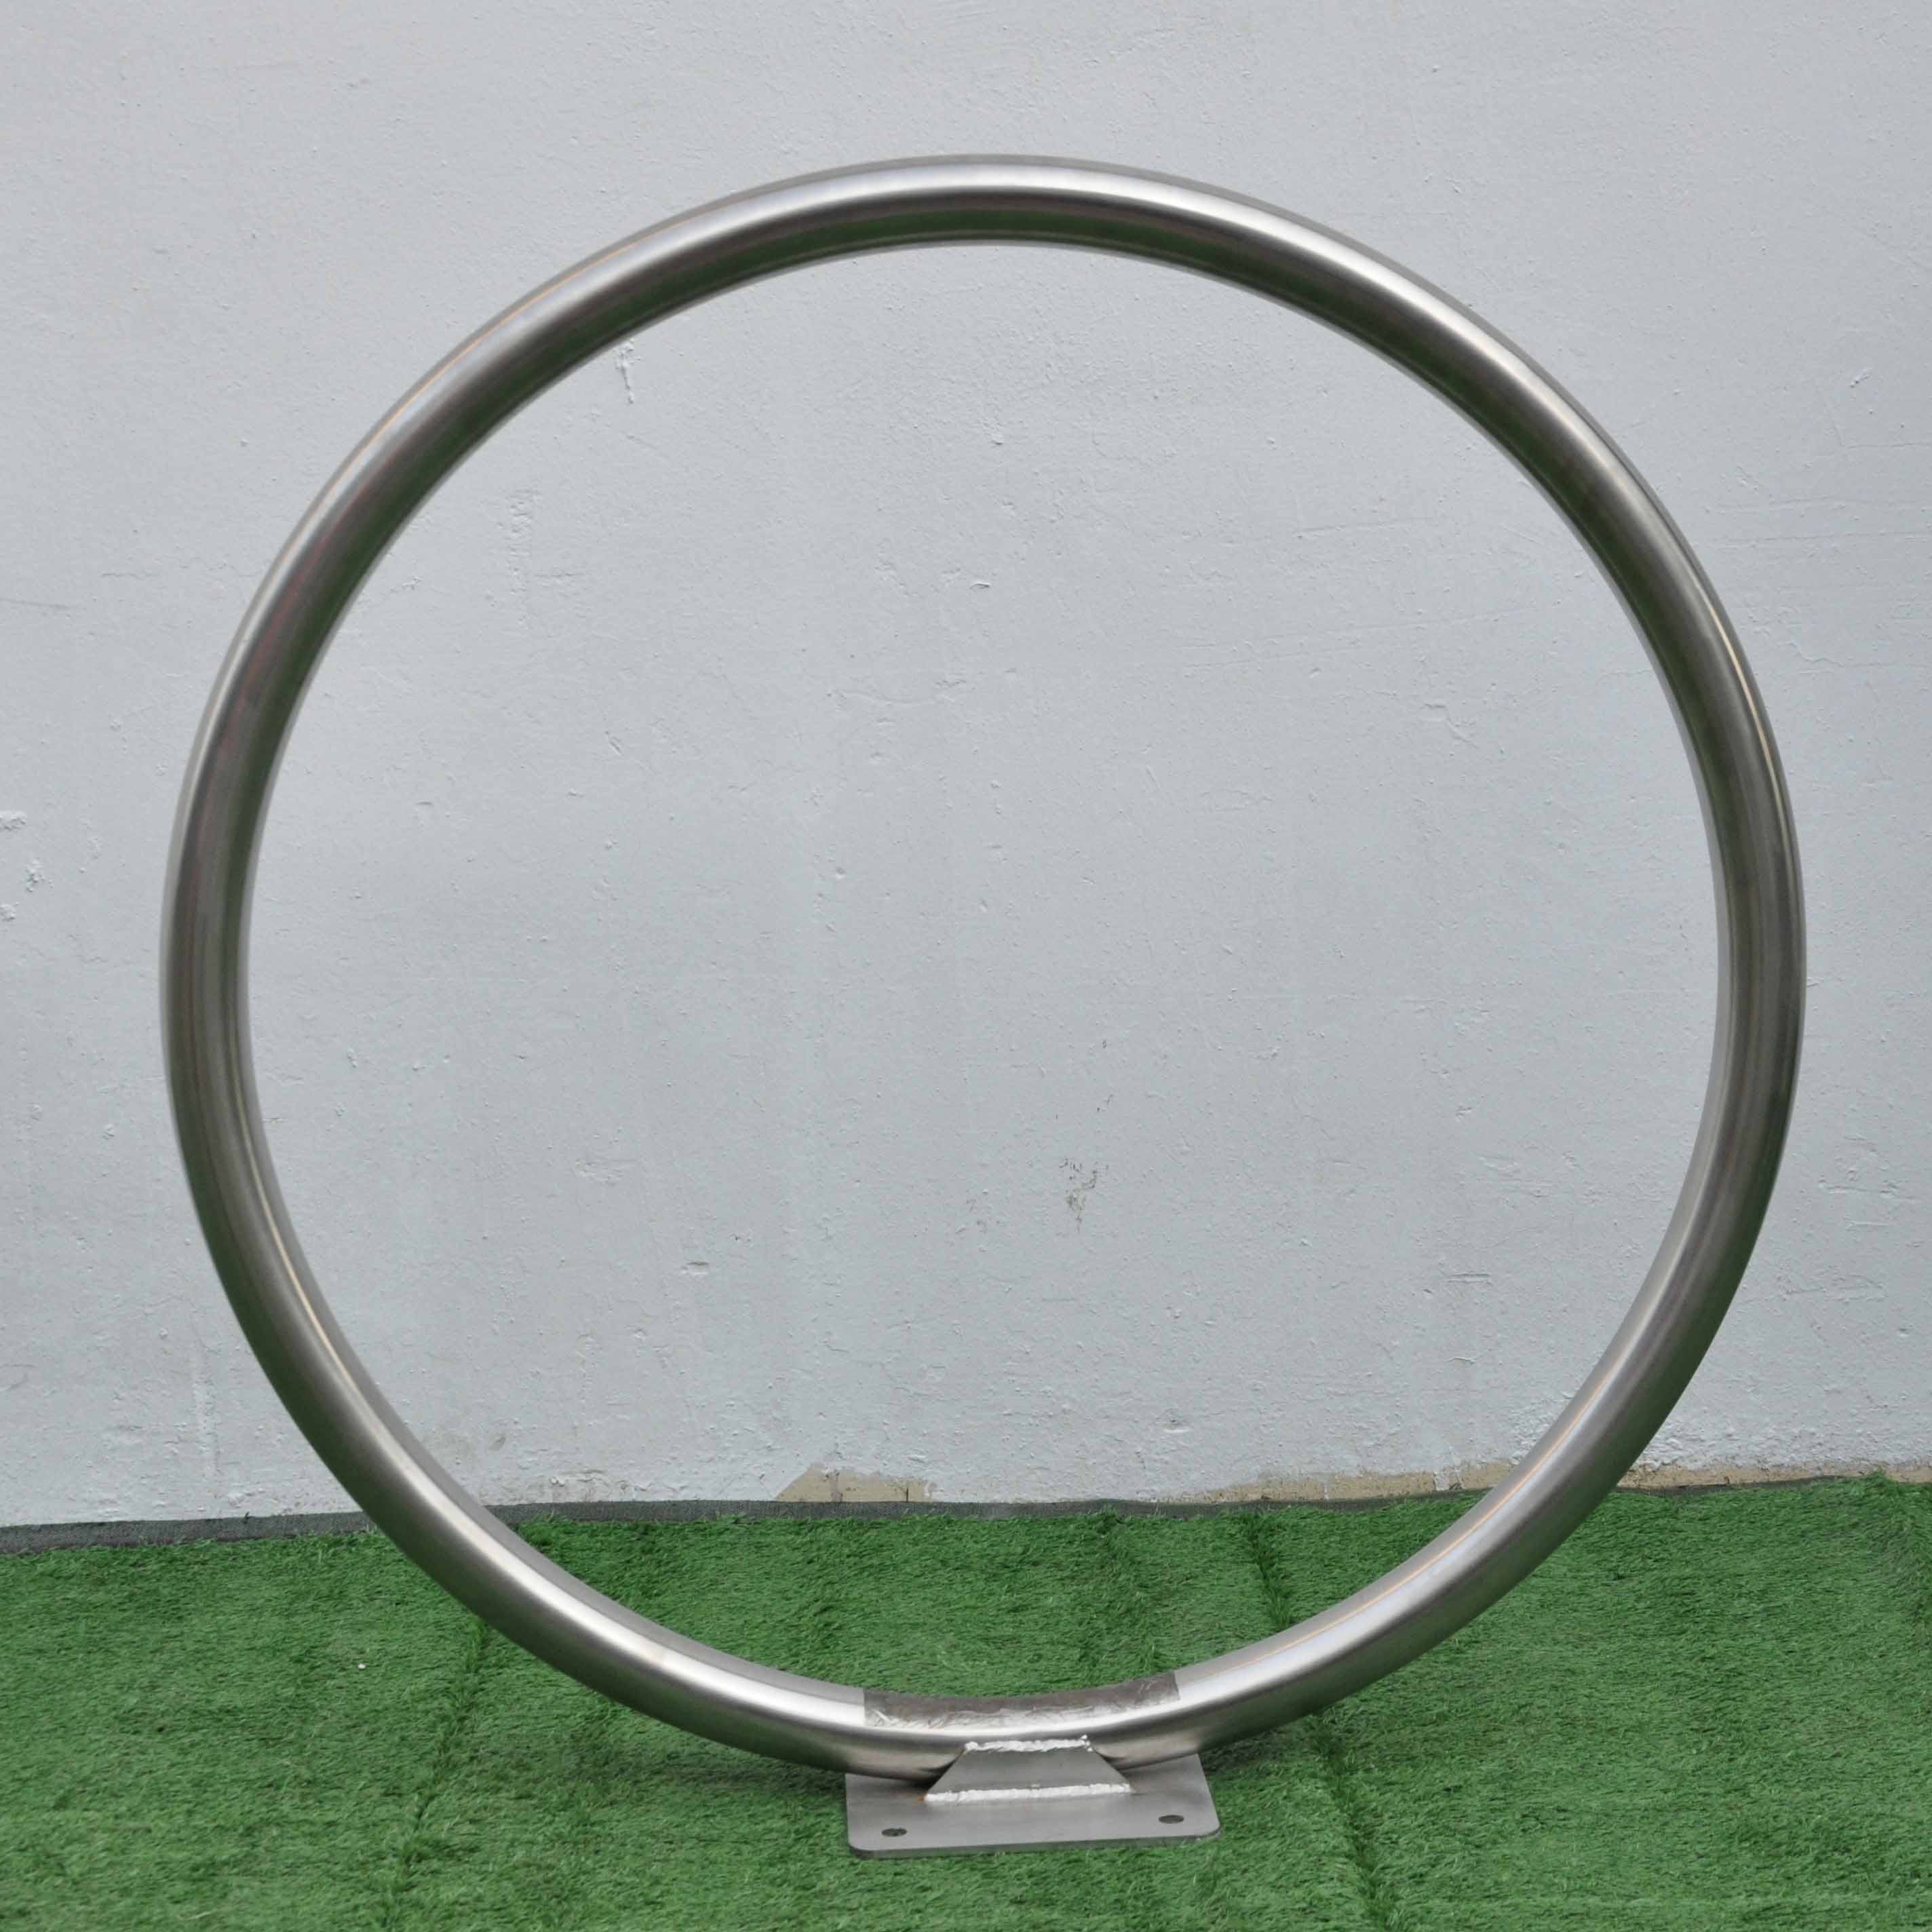 Support de cycle de cercle de courbe de support de vélo d'anneau plein d'angle de cerceau simple